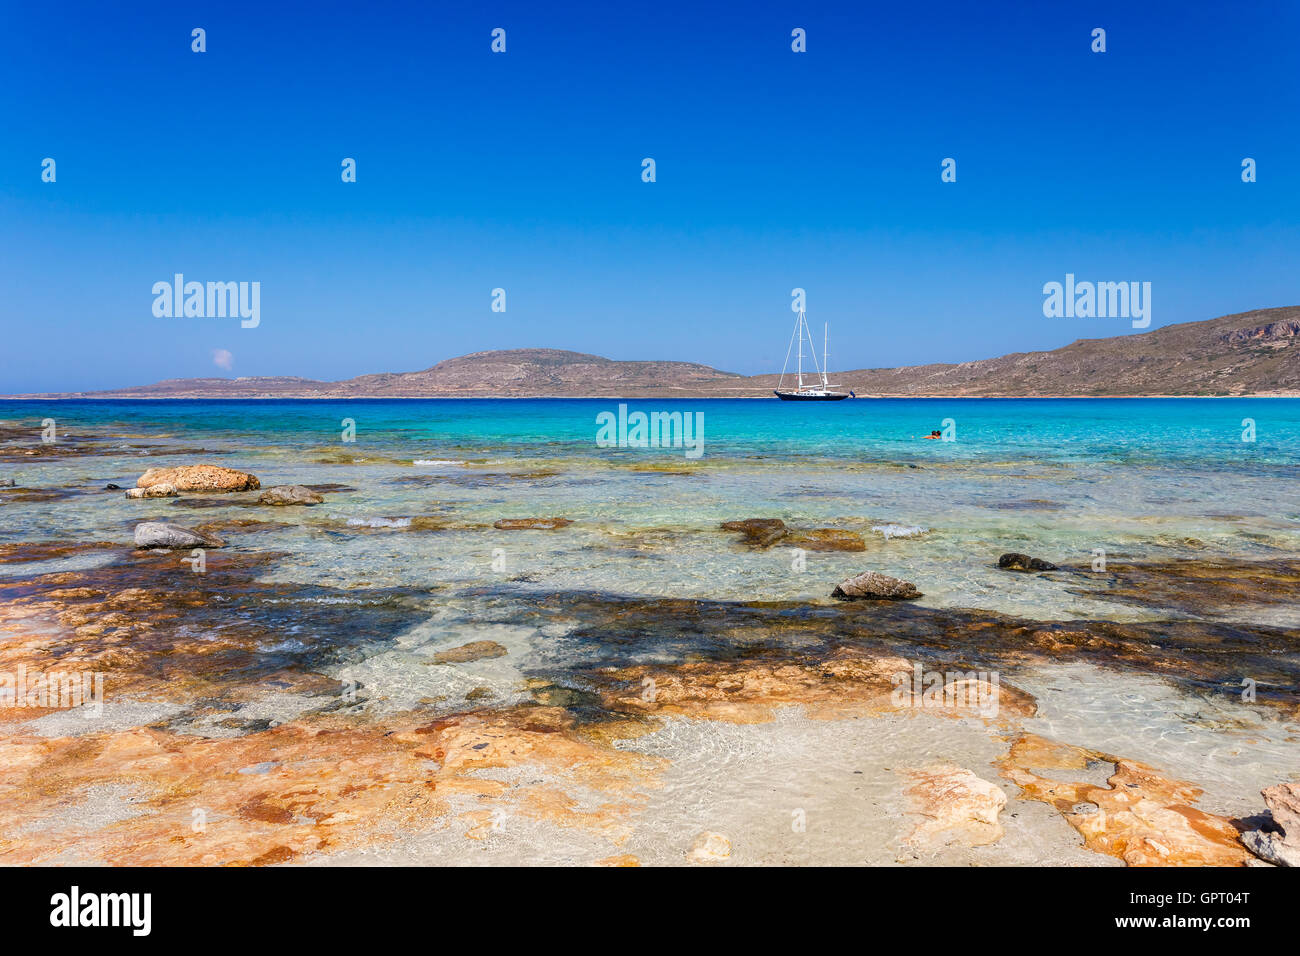 Yate de lujo en la playa en isla Elafonisos simos en Grecia con sus idílicas playas exóticas Foto de stock